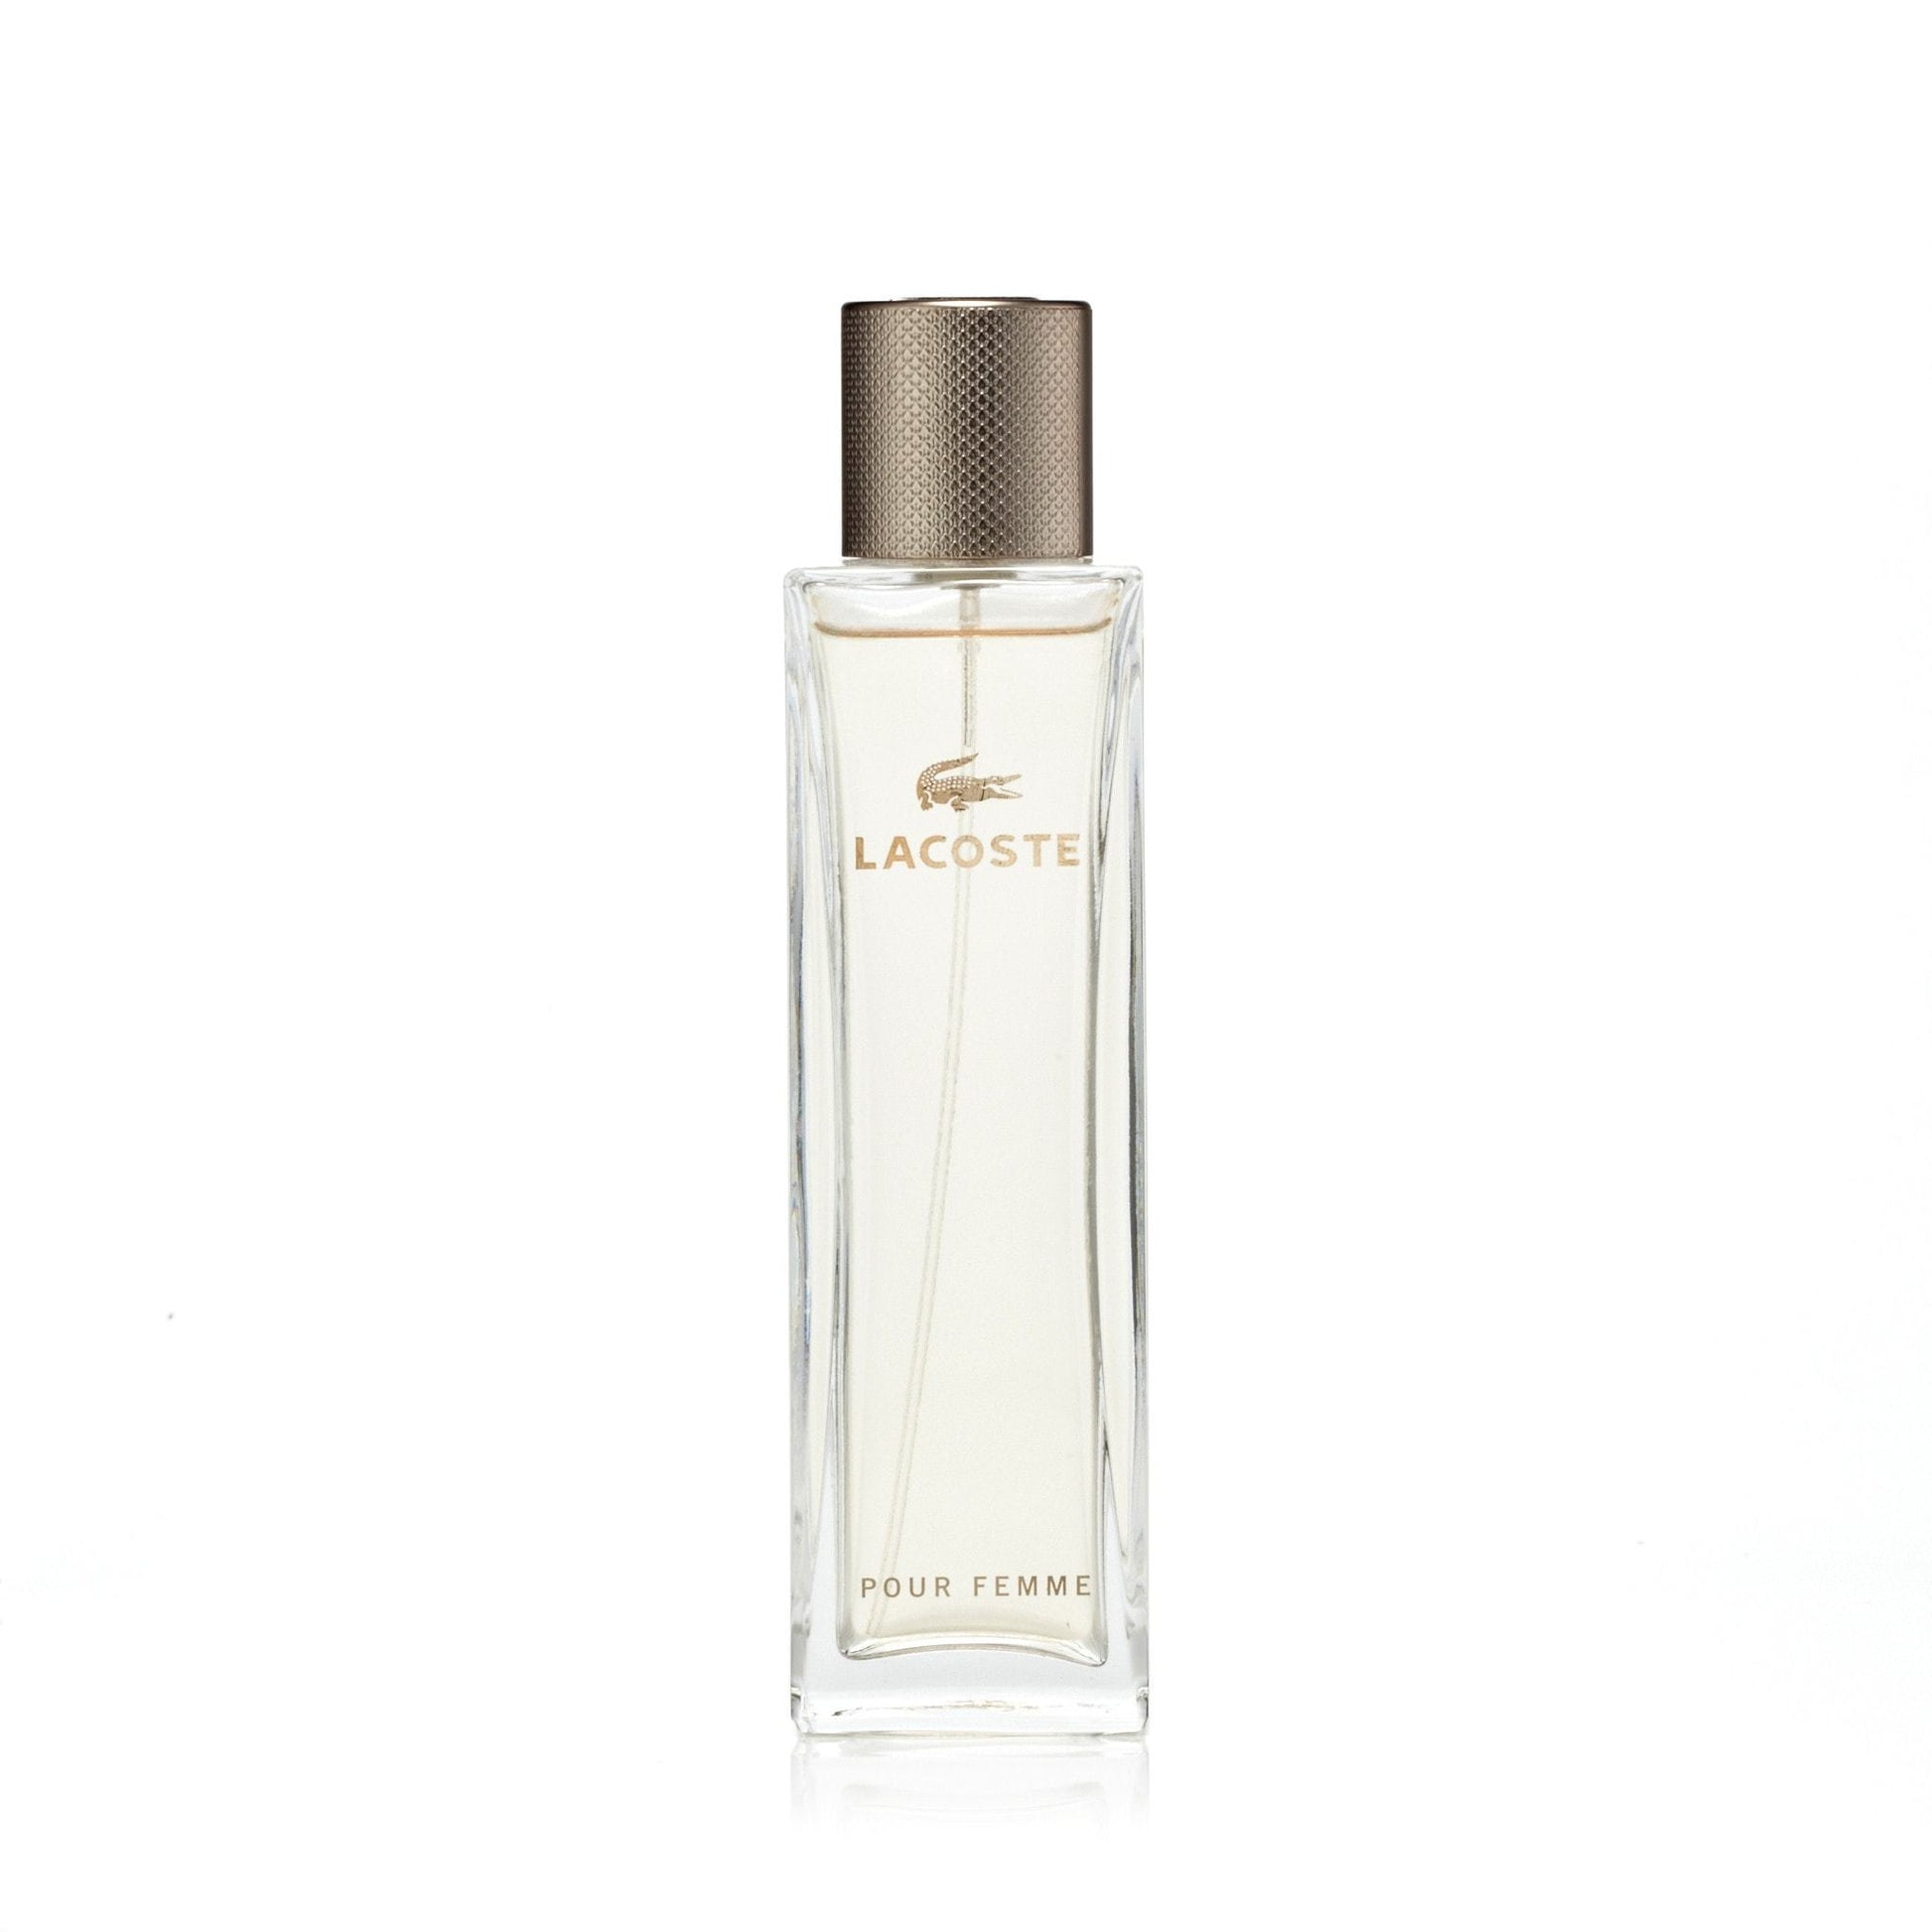 Lacoste Pour Femme Eau de Parfum Spray for Women by Lacoste, Product image 1